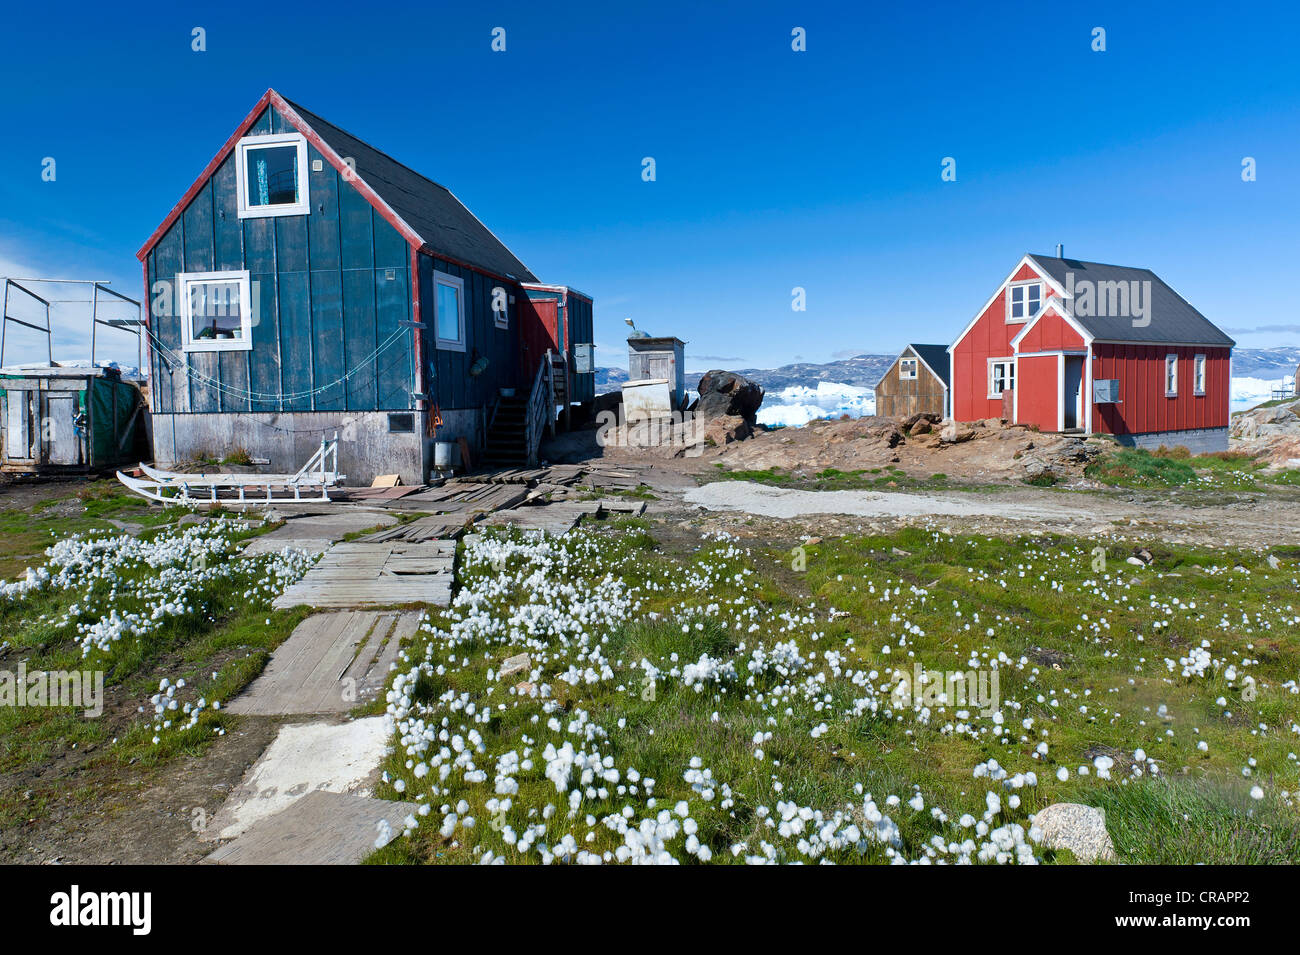 Inuit Häuser und Wollgras, Inuit-Siedlung von Tiniteqilaaq, Sermilik Fjord, Ostgrönland, Grönland Stockfoto